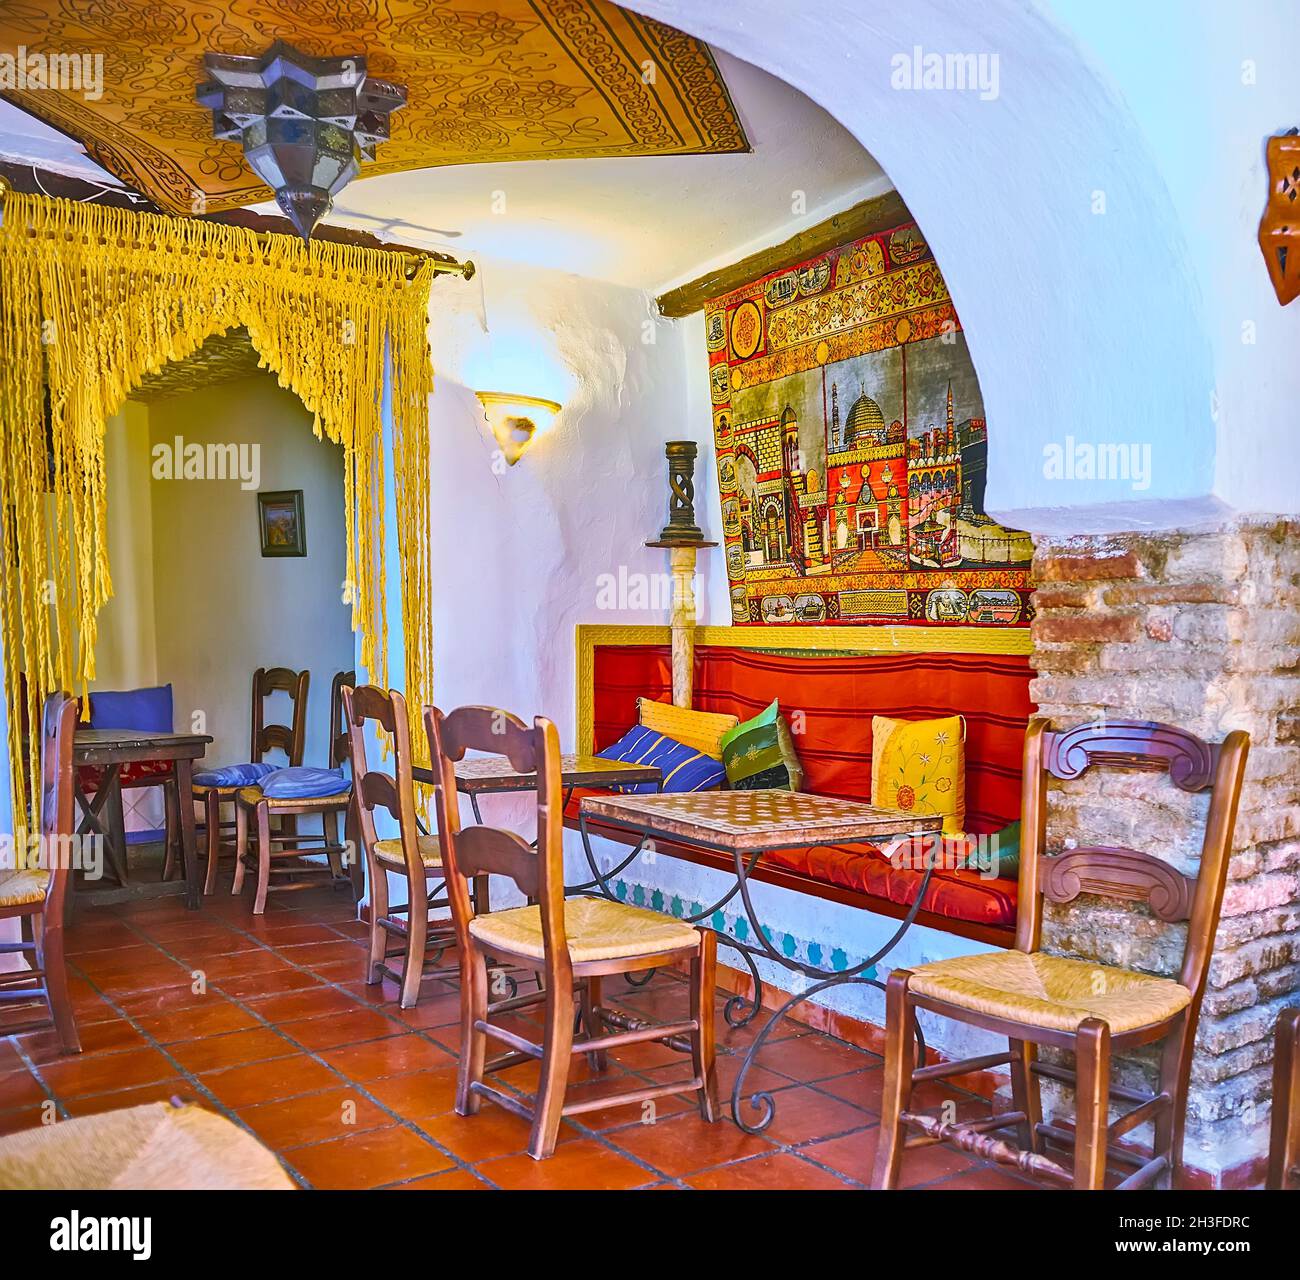 GRENADE, ESPAGNE - 27 SEPTEMBRE 2019 : intérieur d'une maison de thé de  style arabe traditionnel avec meubles en bois, tapis, lumières arabes et  motifs islamiques Photo Stock - Alamy